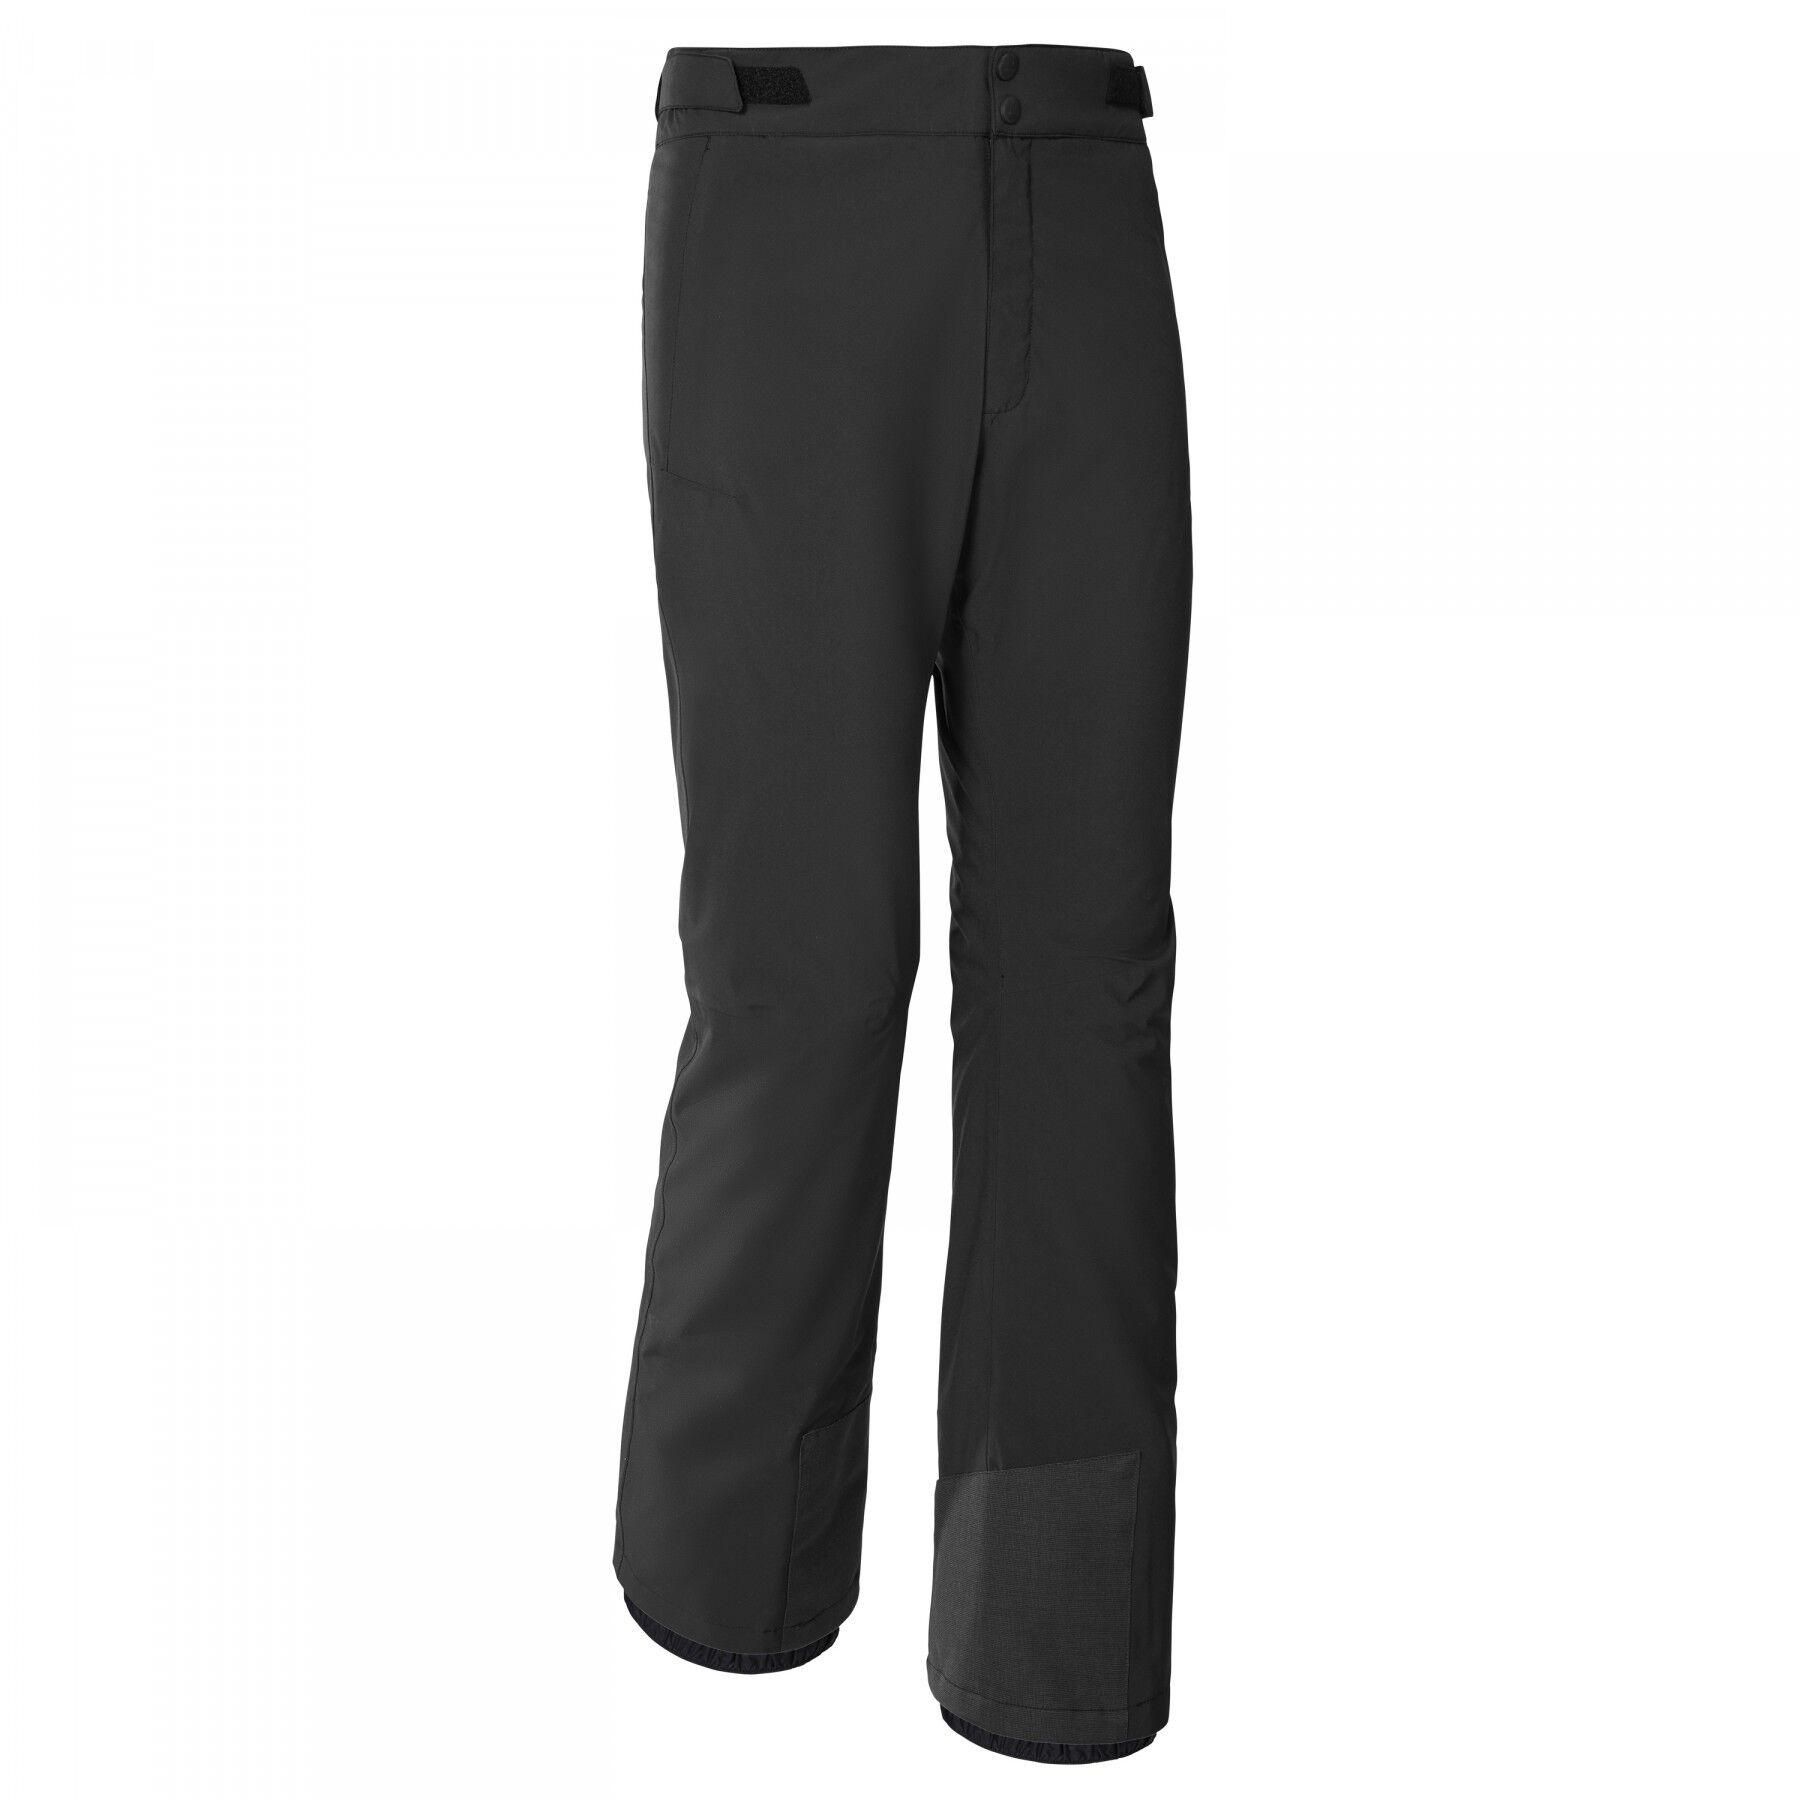 Eider Edge Pant 2.0 M - Ski trousers - Men's